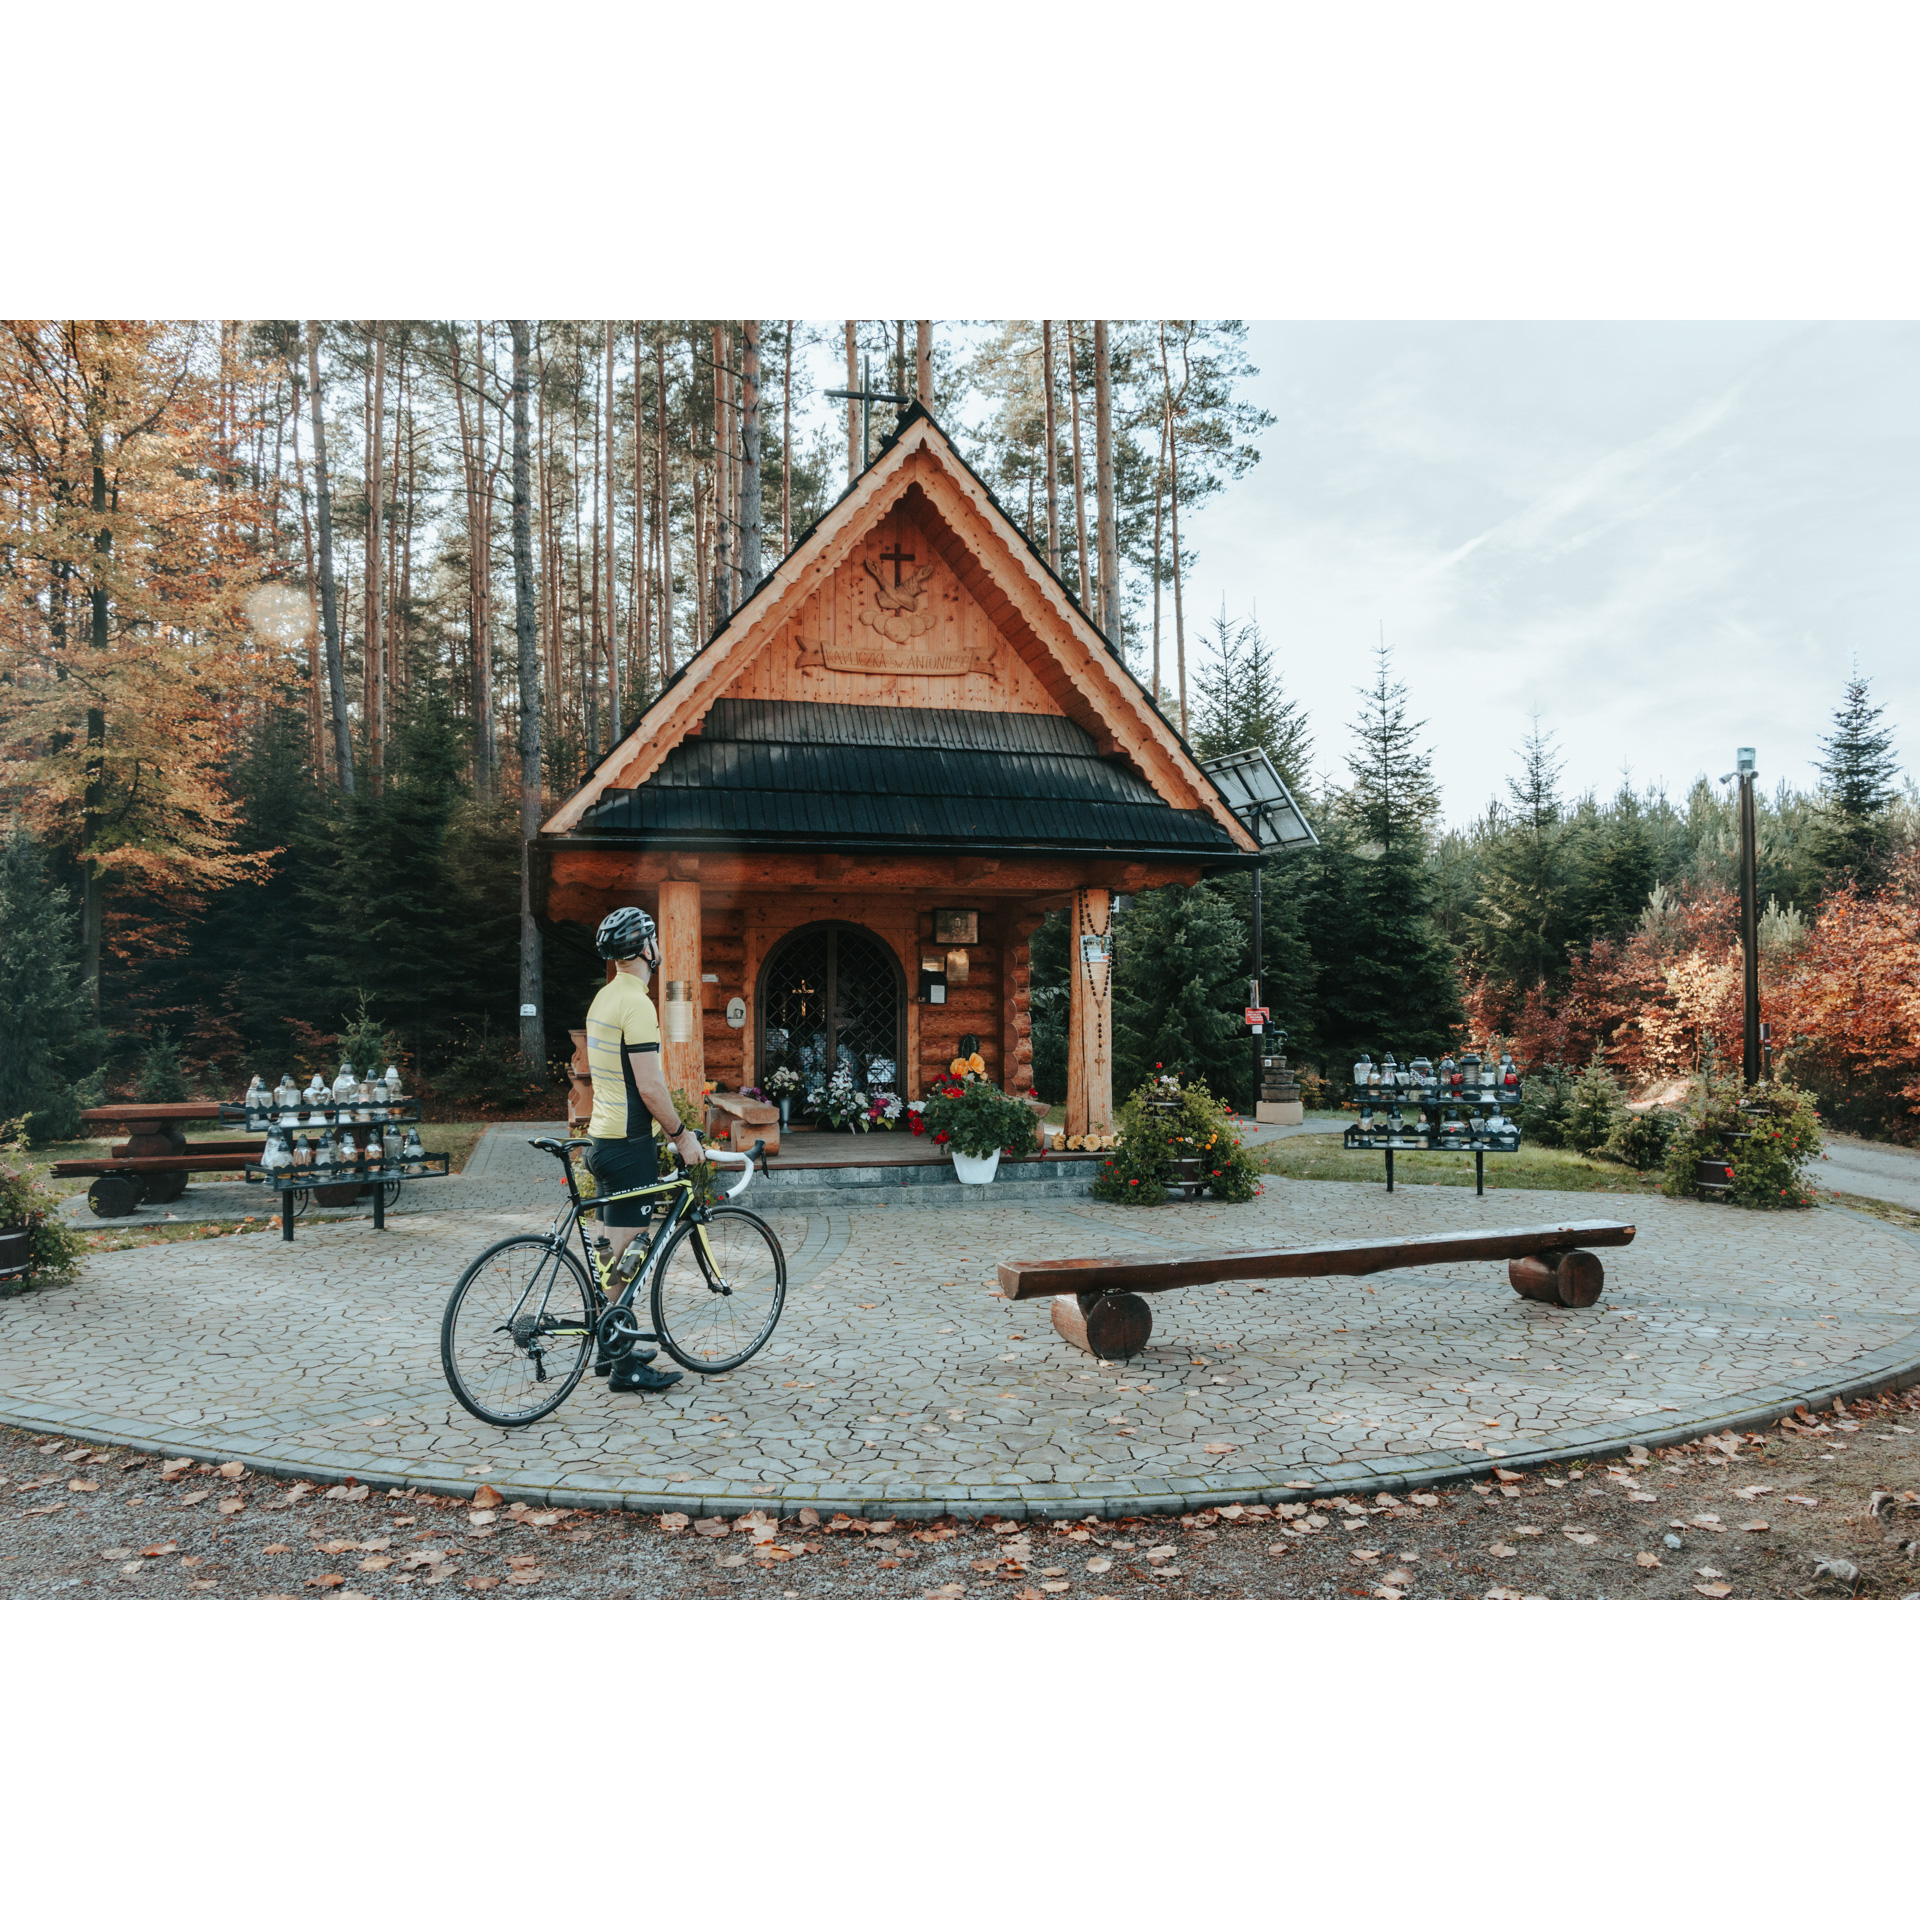 Drewniana kapliczka pośrodku jesiennego lasu umiejscowiona na wybrukowanym małym placu, wokół proste, drewniane ławki, a także znicze i kwiaty, w centrym rowerzysta w żółtym stroju sportowym, kasku, trzymający rower